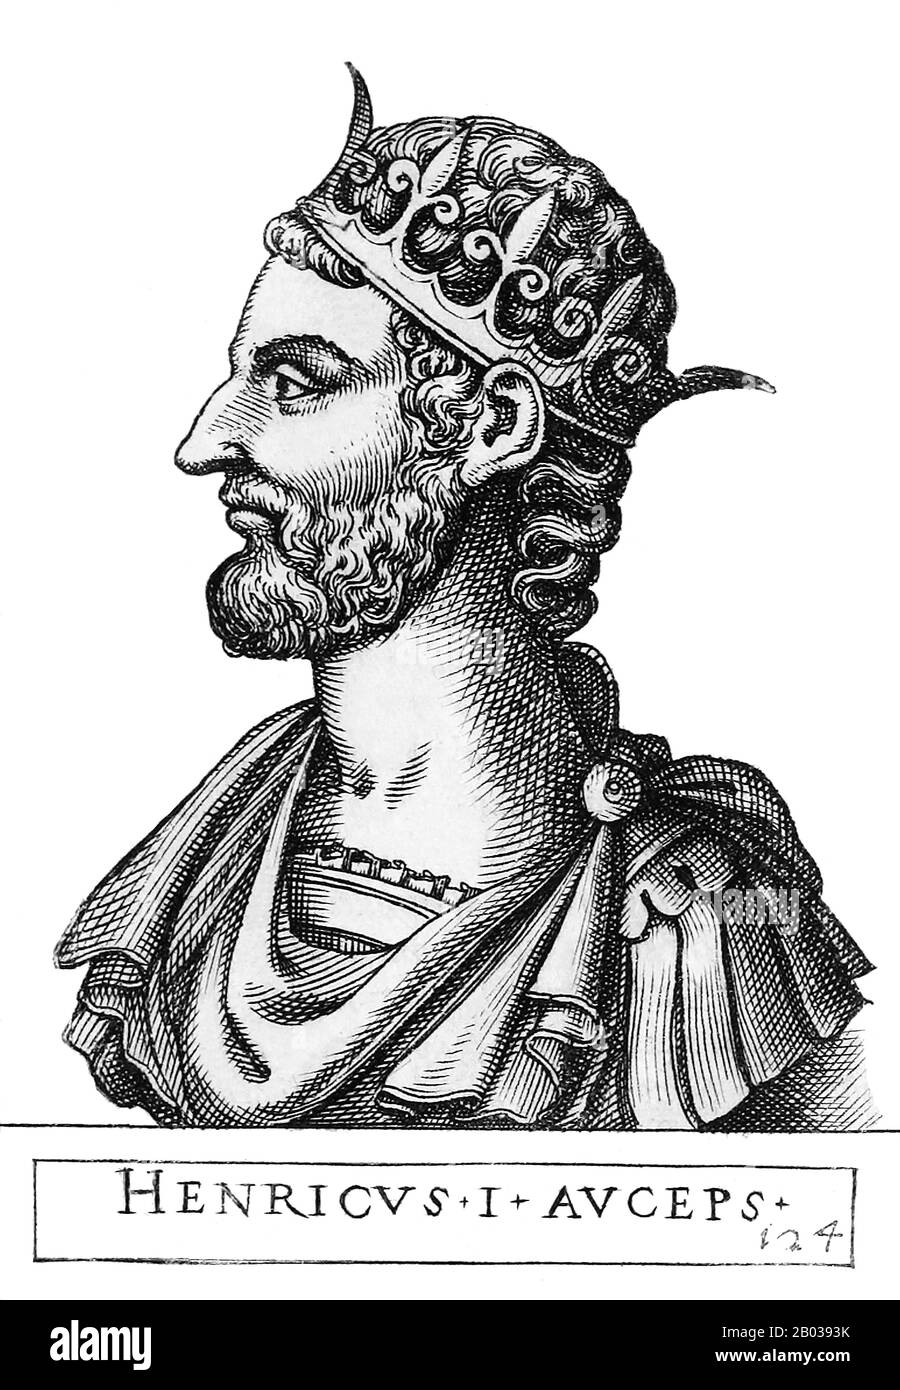 Enrico i (876-936), conosciuto anche come Enrico il Fowler, era figlio di otto l'Illustrious, duca di Sassonia, e divenne duca se stesso nel 912. Era di discendenza sassone, e spesso era in conflitto con i suoi vicini meridionali. Divenne re di Francia orientale nel 919 dopo la morte del re Cornad i, chiamato come successore del re sul suo letto di morte, diventando il primo re non-Frankish. L'elezione di Enrico al re non era stata sostenuta da tutti i duchi, così si era battuto per allinearli, specialmente contro il duca Arnulf di Baviera, che alla fine aveva sconfitto nel 921 e costretto a sottomettersi. Era troppo debole per imporre assolutista Foto Stock